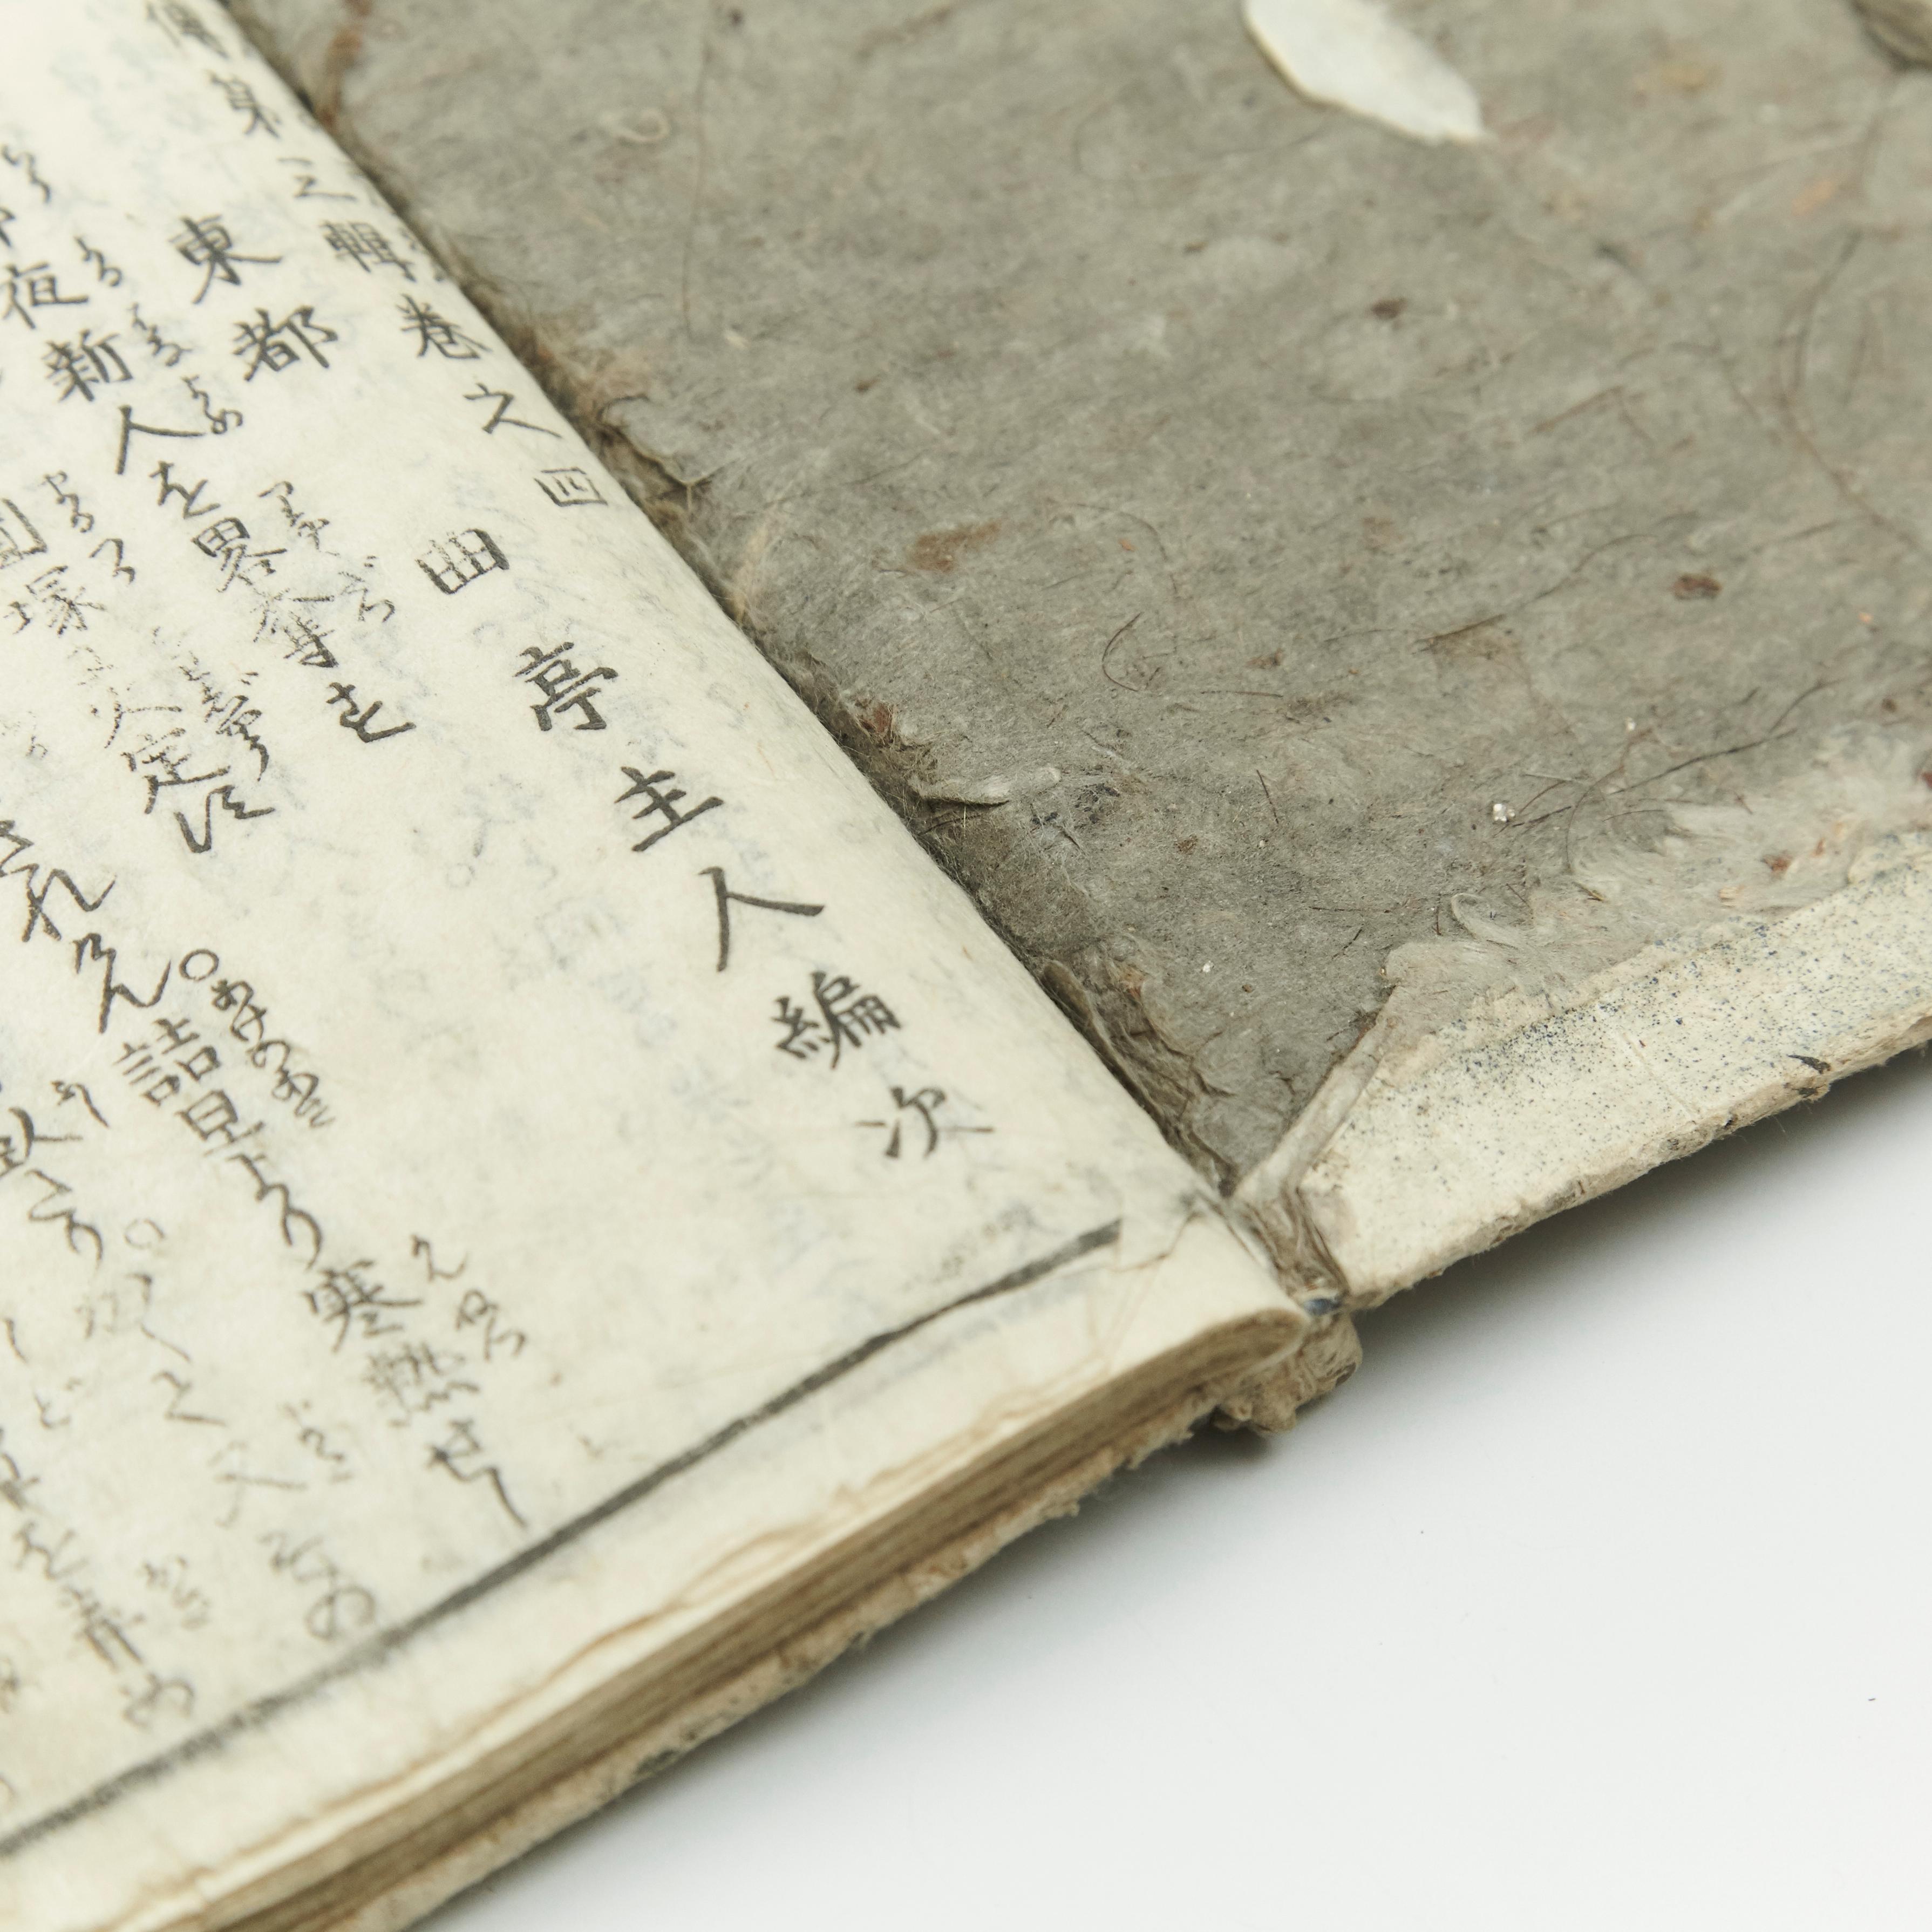 Antique Japanese Epic Novel Book Edo Period, circa 1819 4